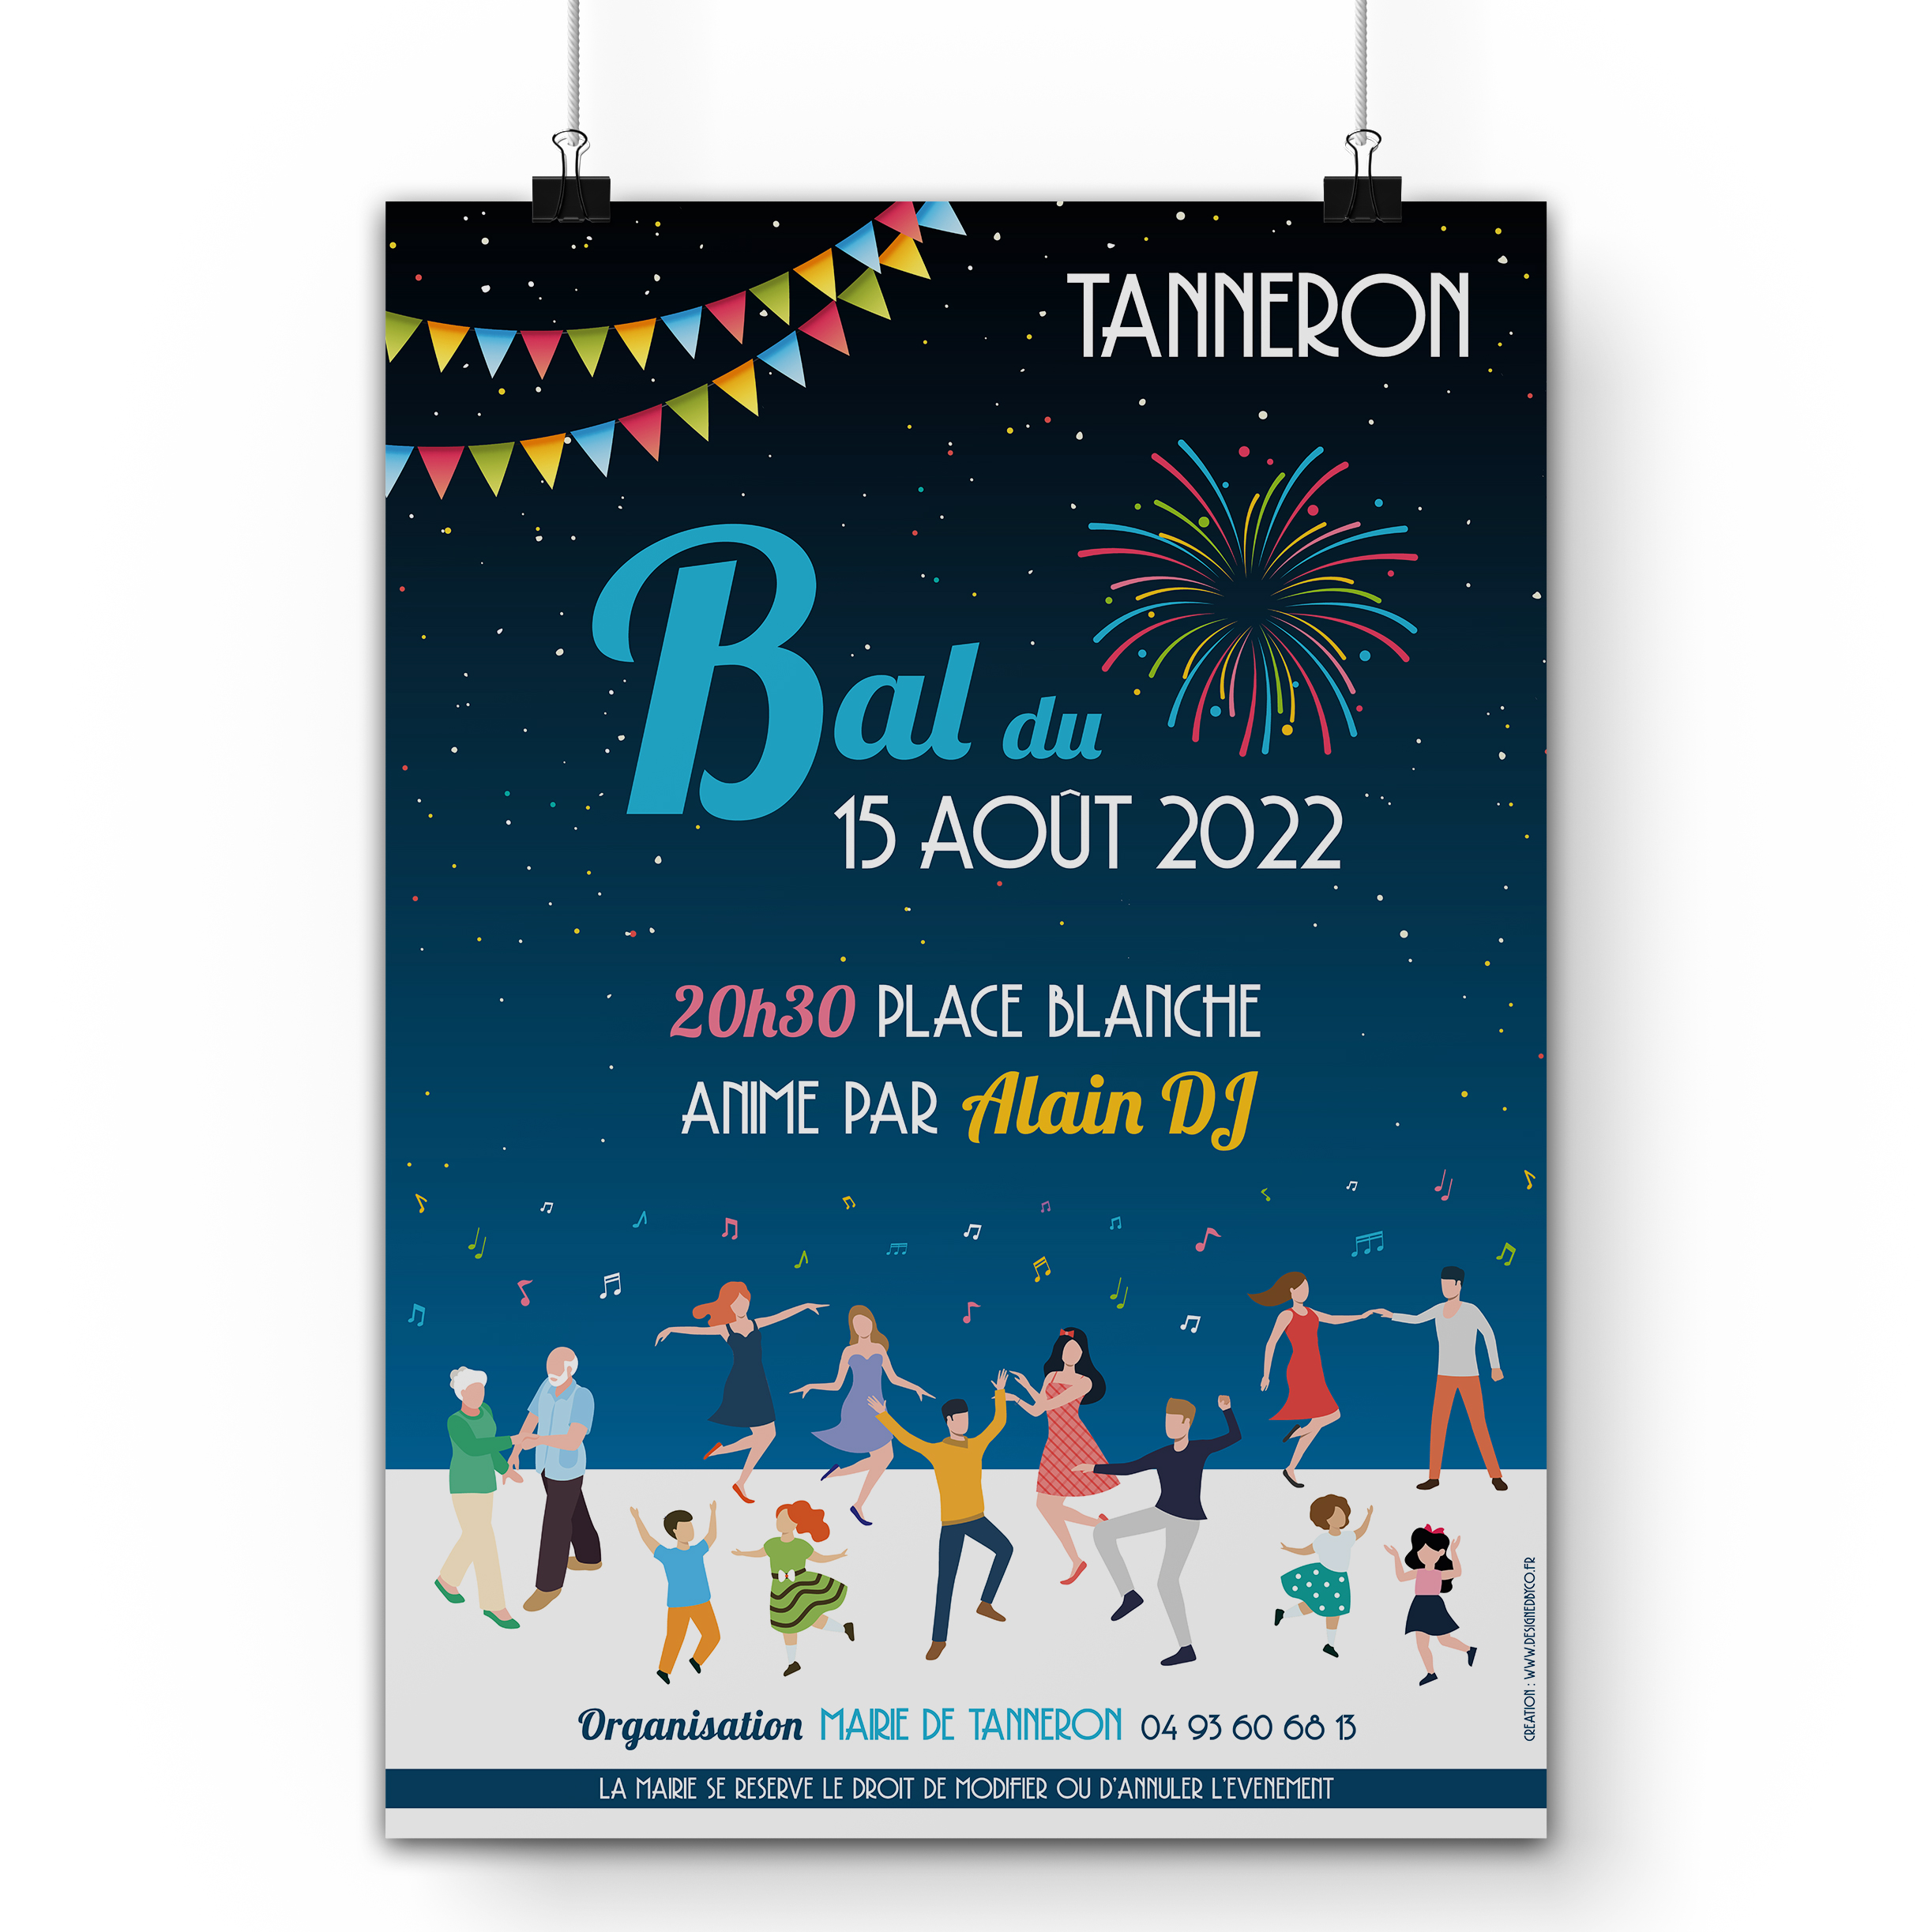 Affiche pour la Fête du 15 août 2022 à Tanneron